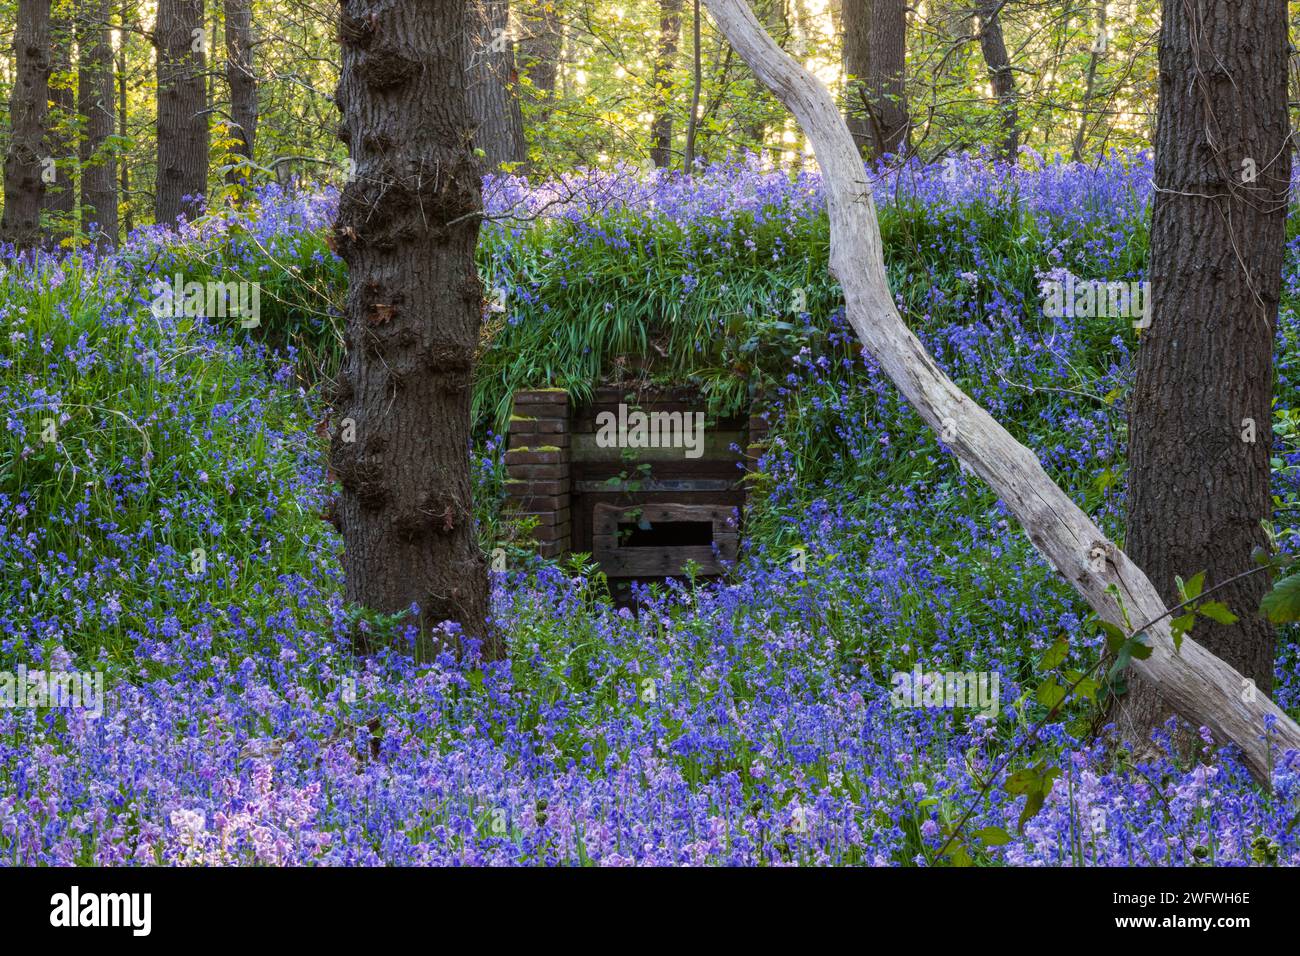 Giacinti viola selvatici (campane blu) che crescono su un bunker di guerra mondiale durante il tramonto. Anche un vecchio bunker della seconda guerra mondiale sembra adorabile in questa scena colorata. Foto Stock